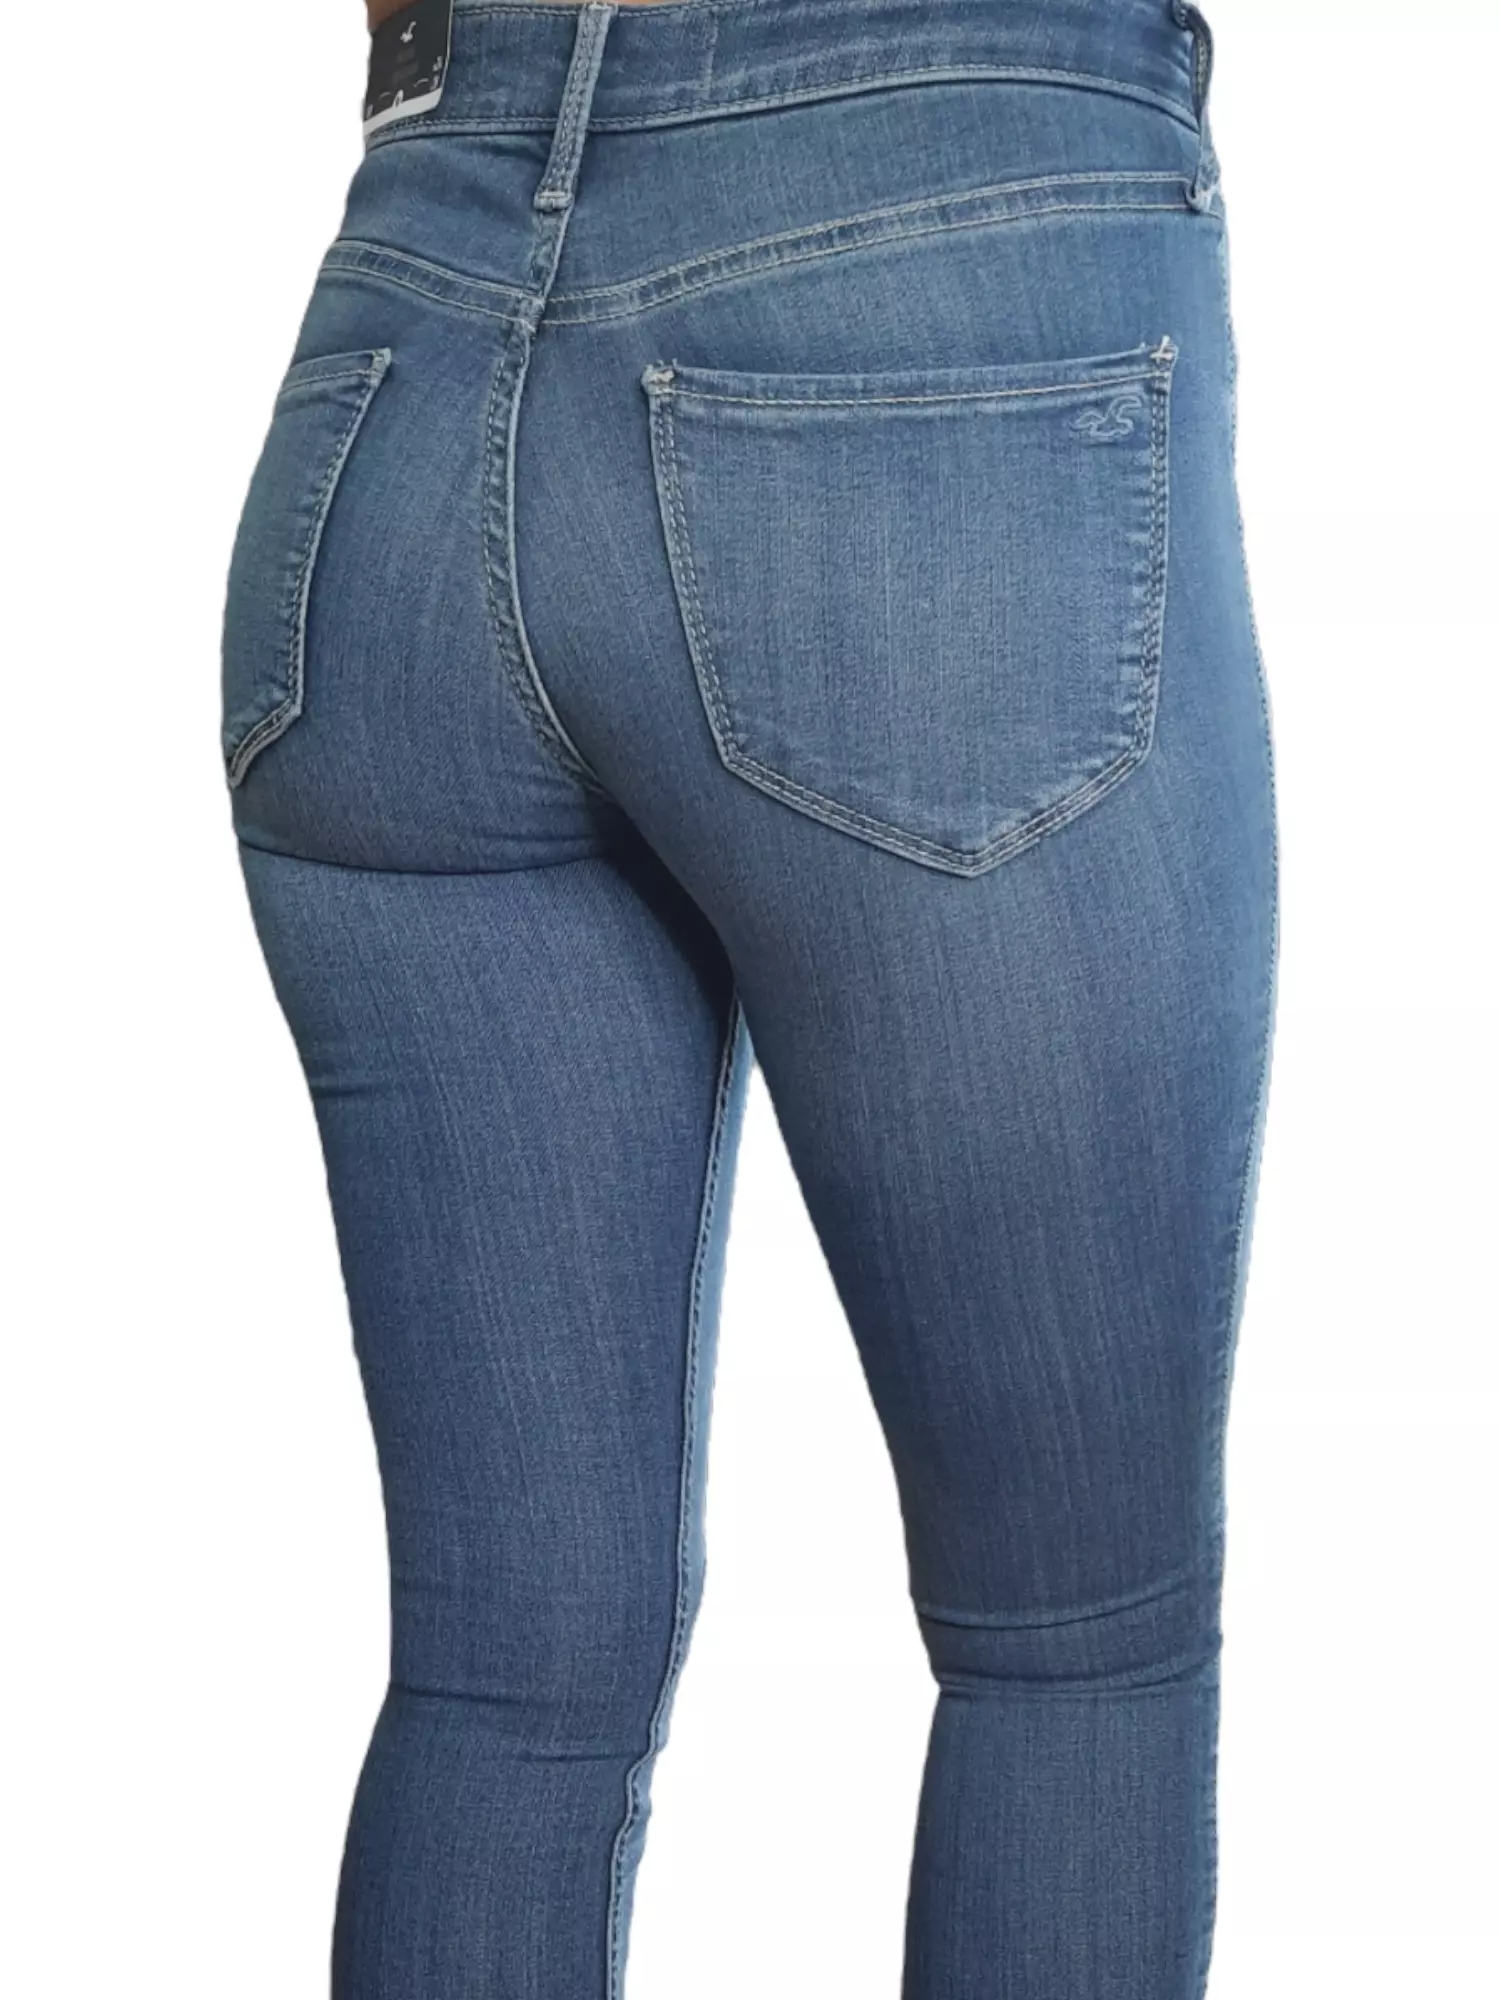 Las mejores ofertas en Pantalones de Tamaño Regular Hollister para Mujeres